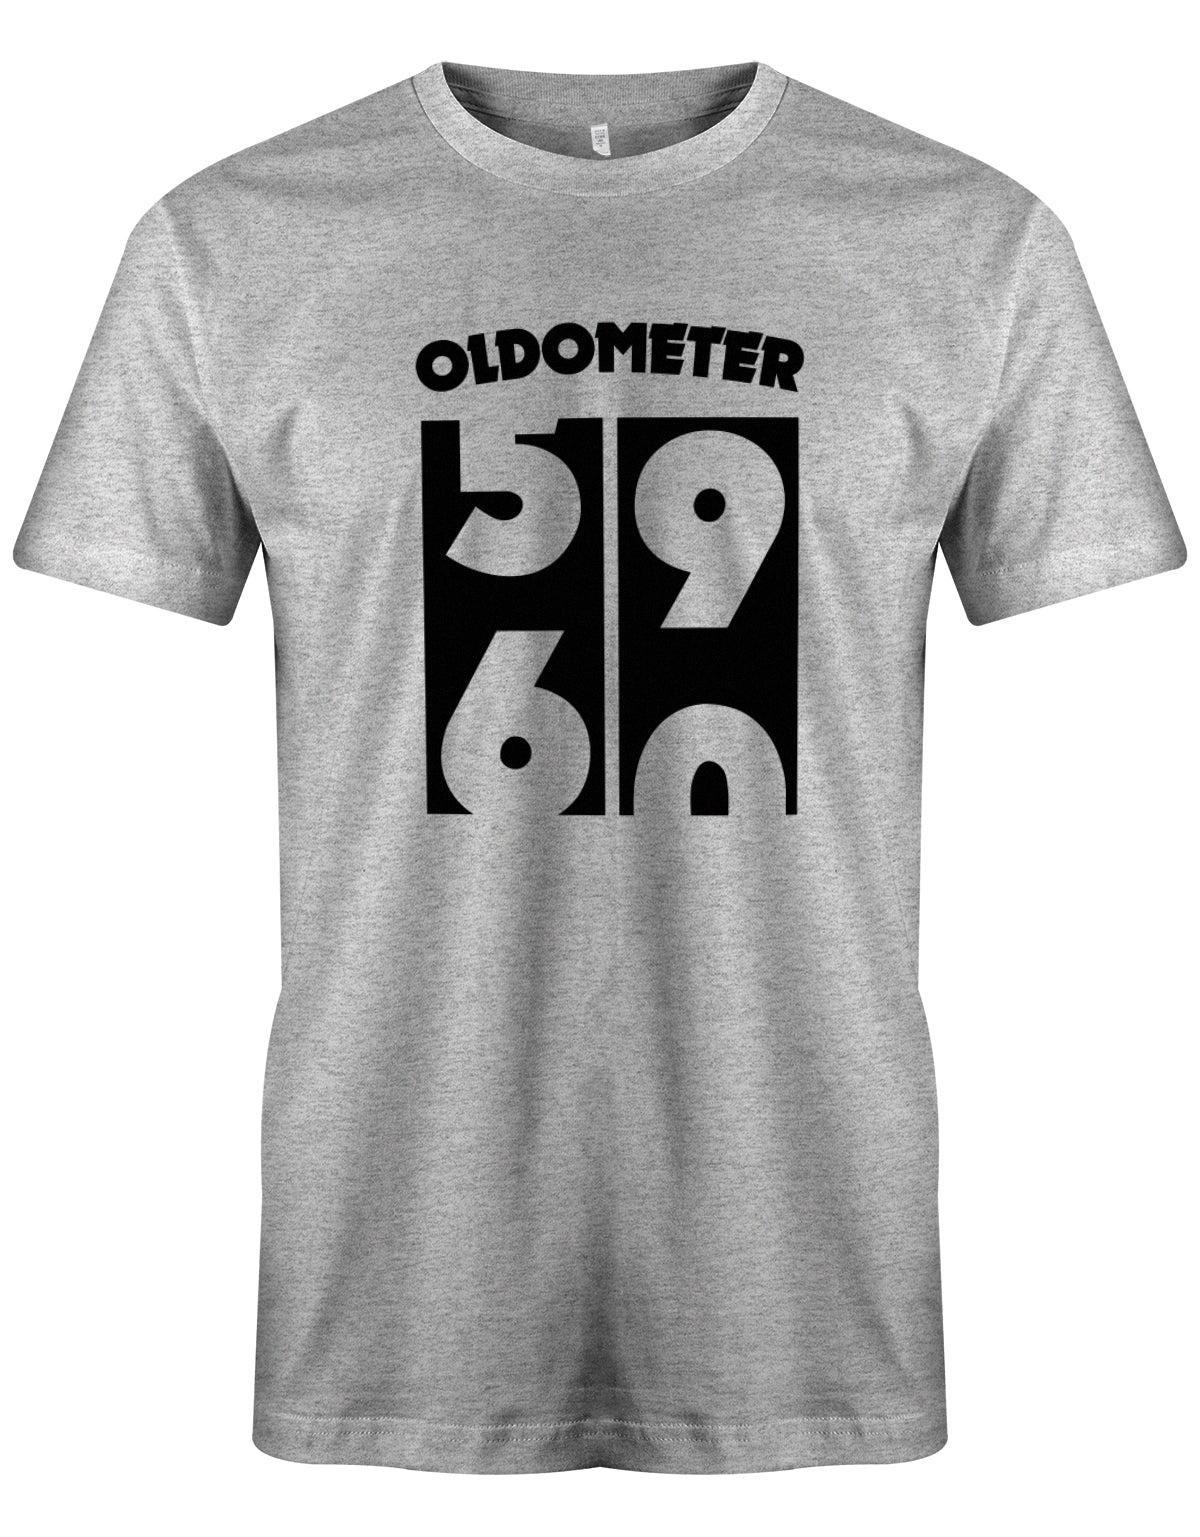 Lustiges T-Shirt zum 60. Geburtstag für den Mann Bedruckt mit Oldometer der wechsel von der 59 zu 60 Jahren. Grau